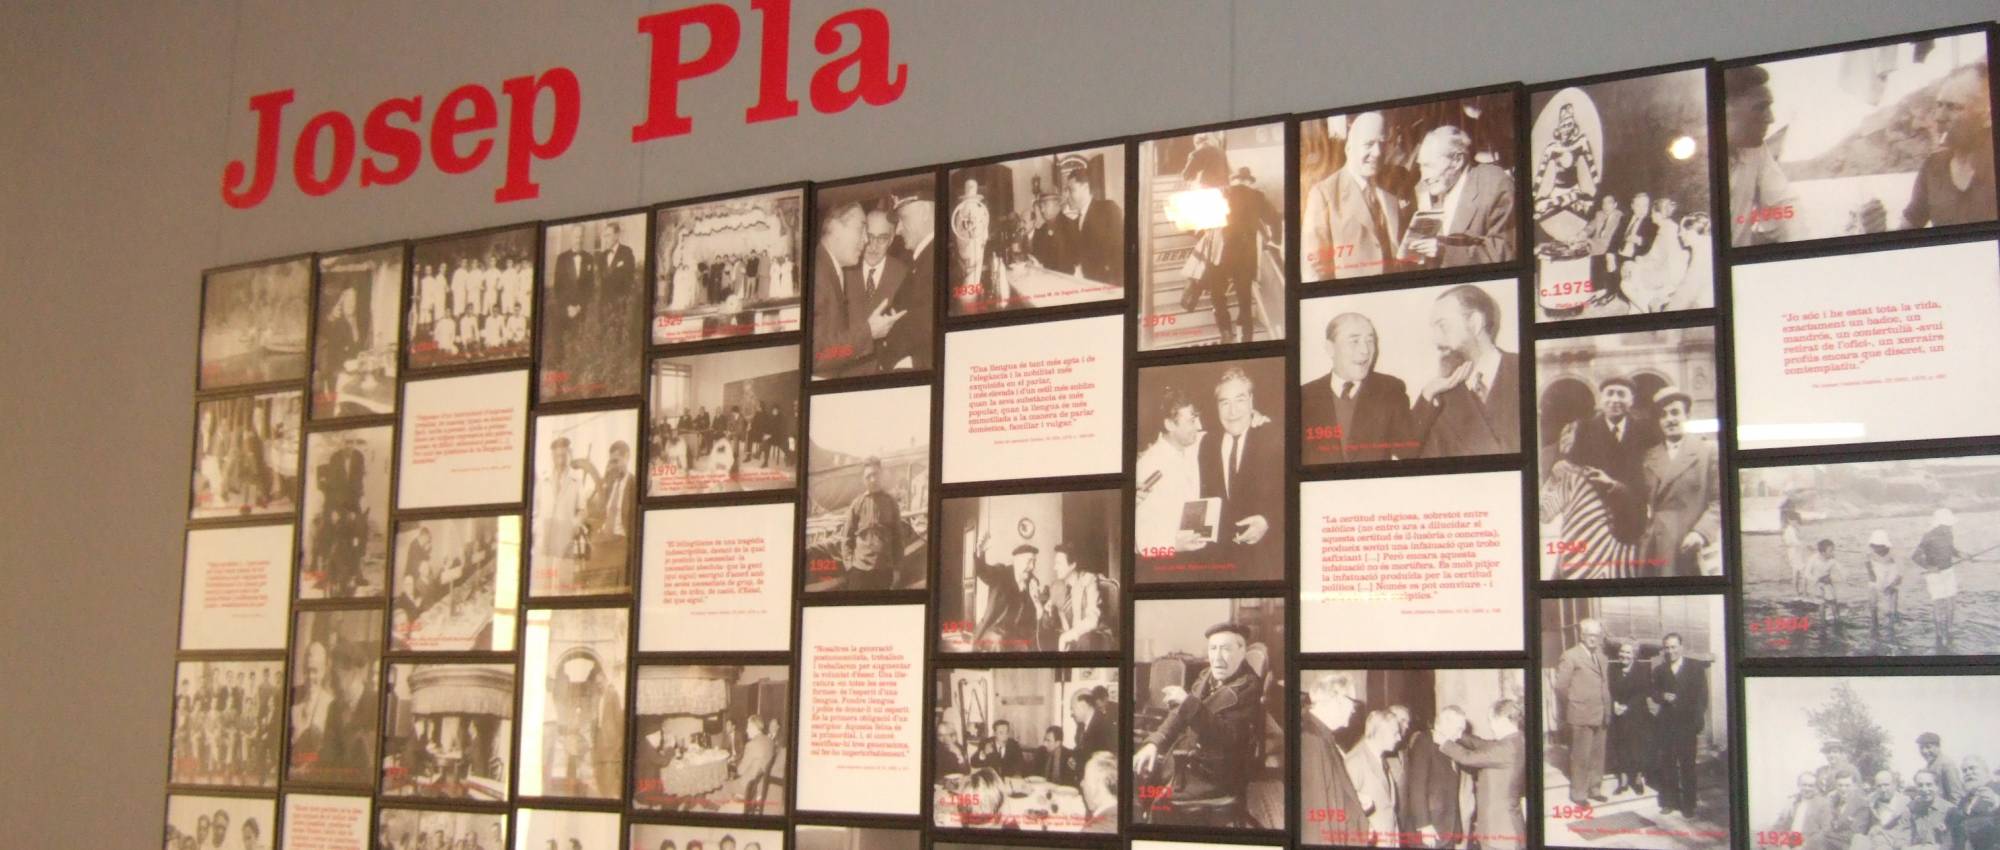 Inicio de la exposición permanente Josep Pla (1897 – 1981). Davidpar / Wikimedia Commons. CC BY-SA 3.